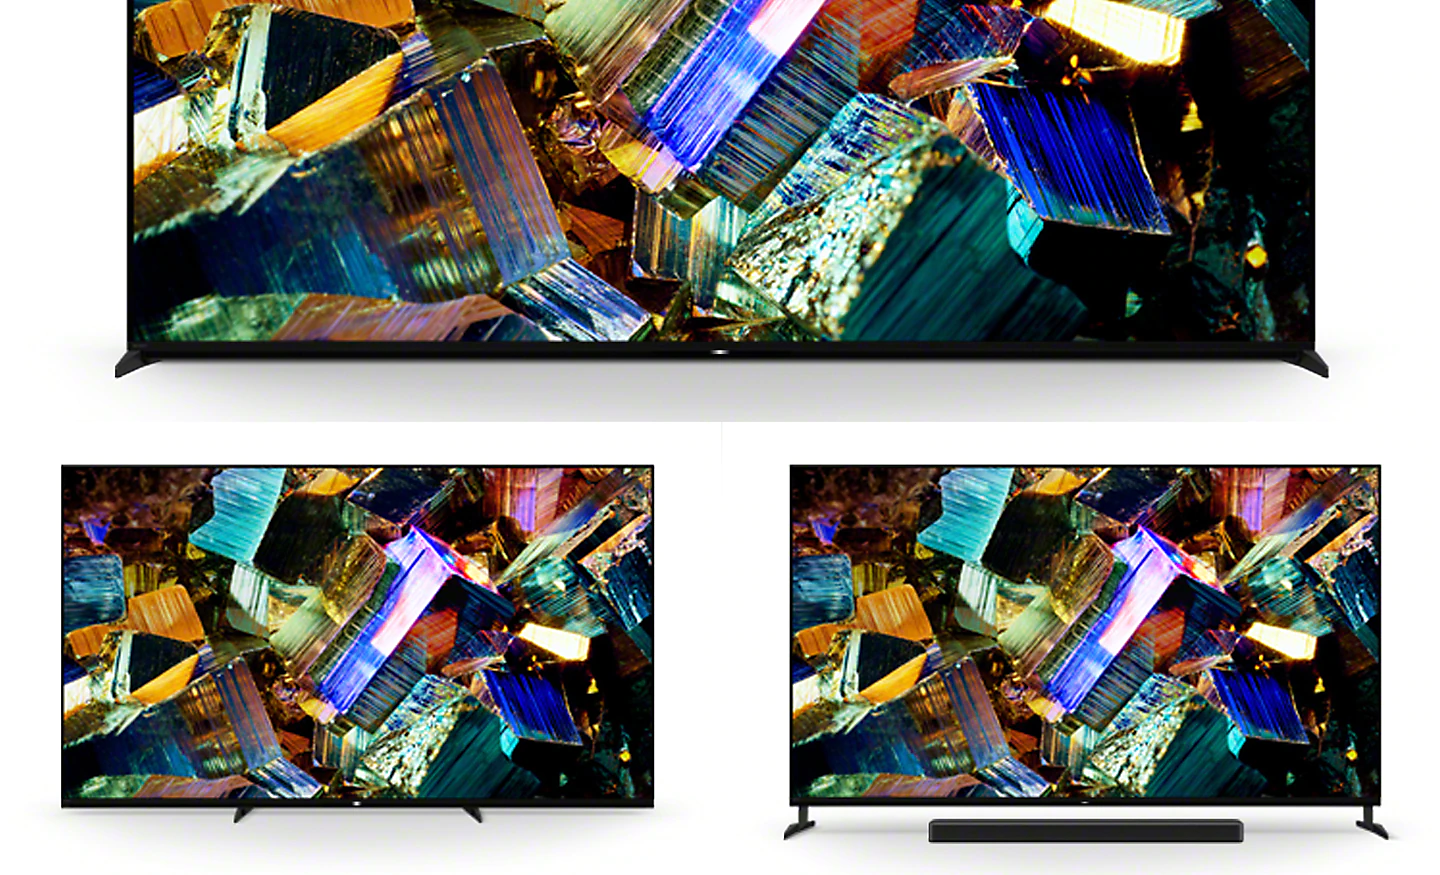 Imagen que muestra el soporte multiposición de 3 posiciones con capturas de pantalla de unas cajas de colores